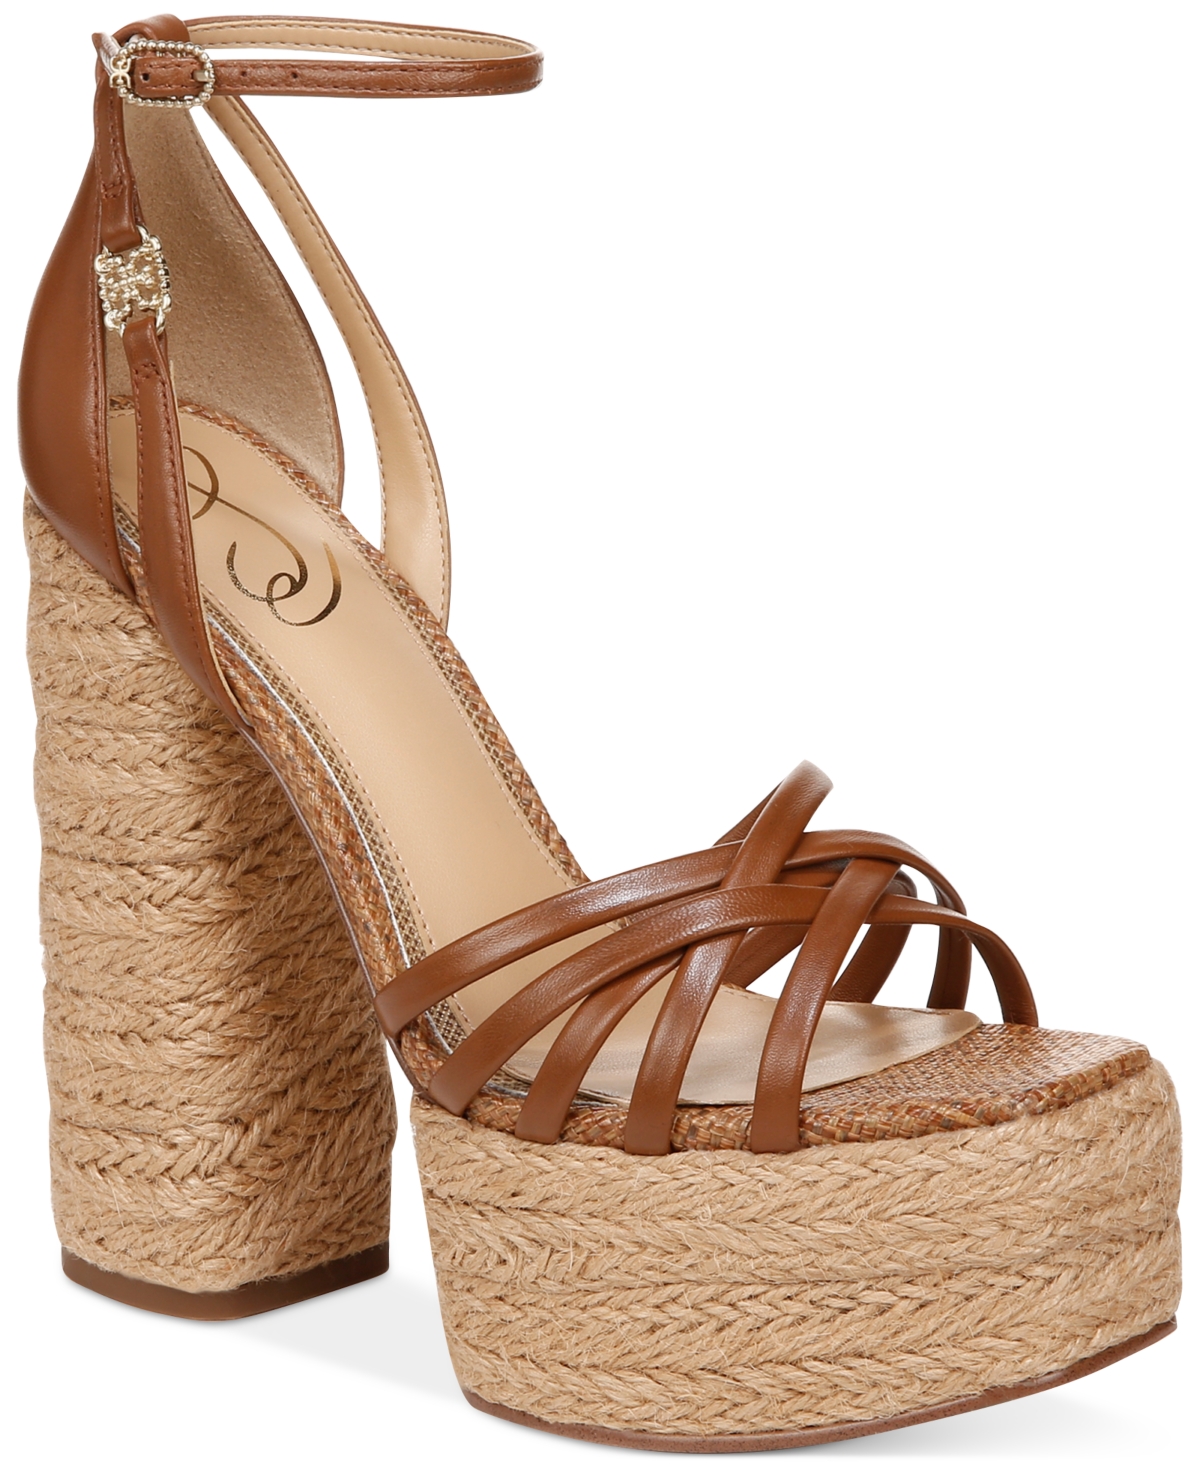 Kade Ankle Strap Platform Dress Sandals - Rich Cognac